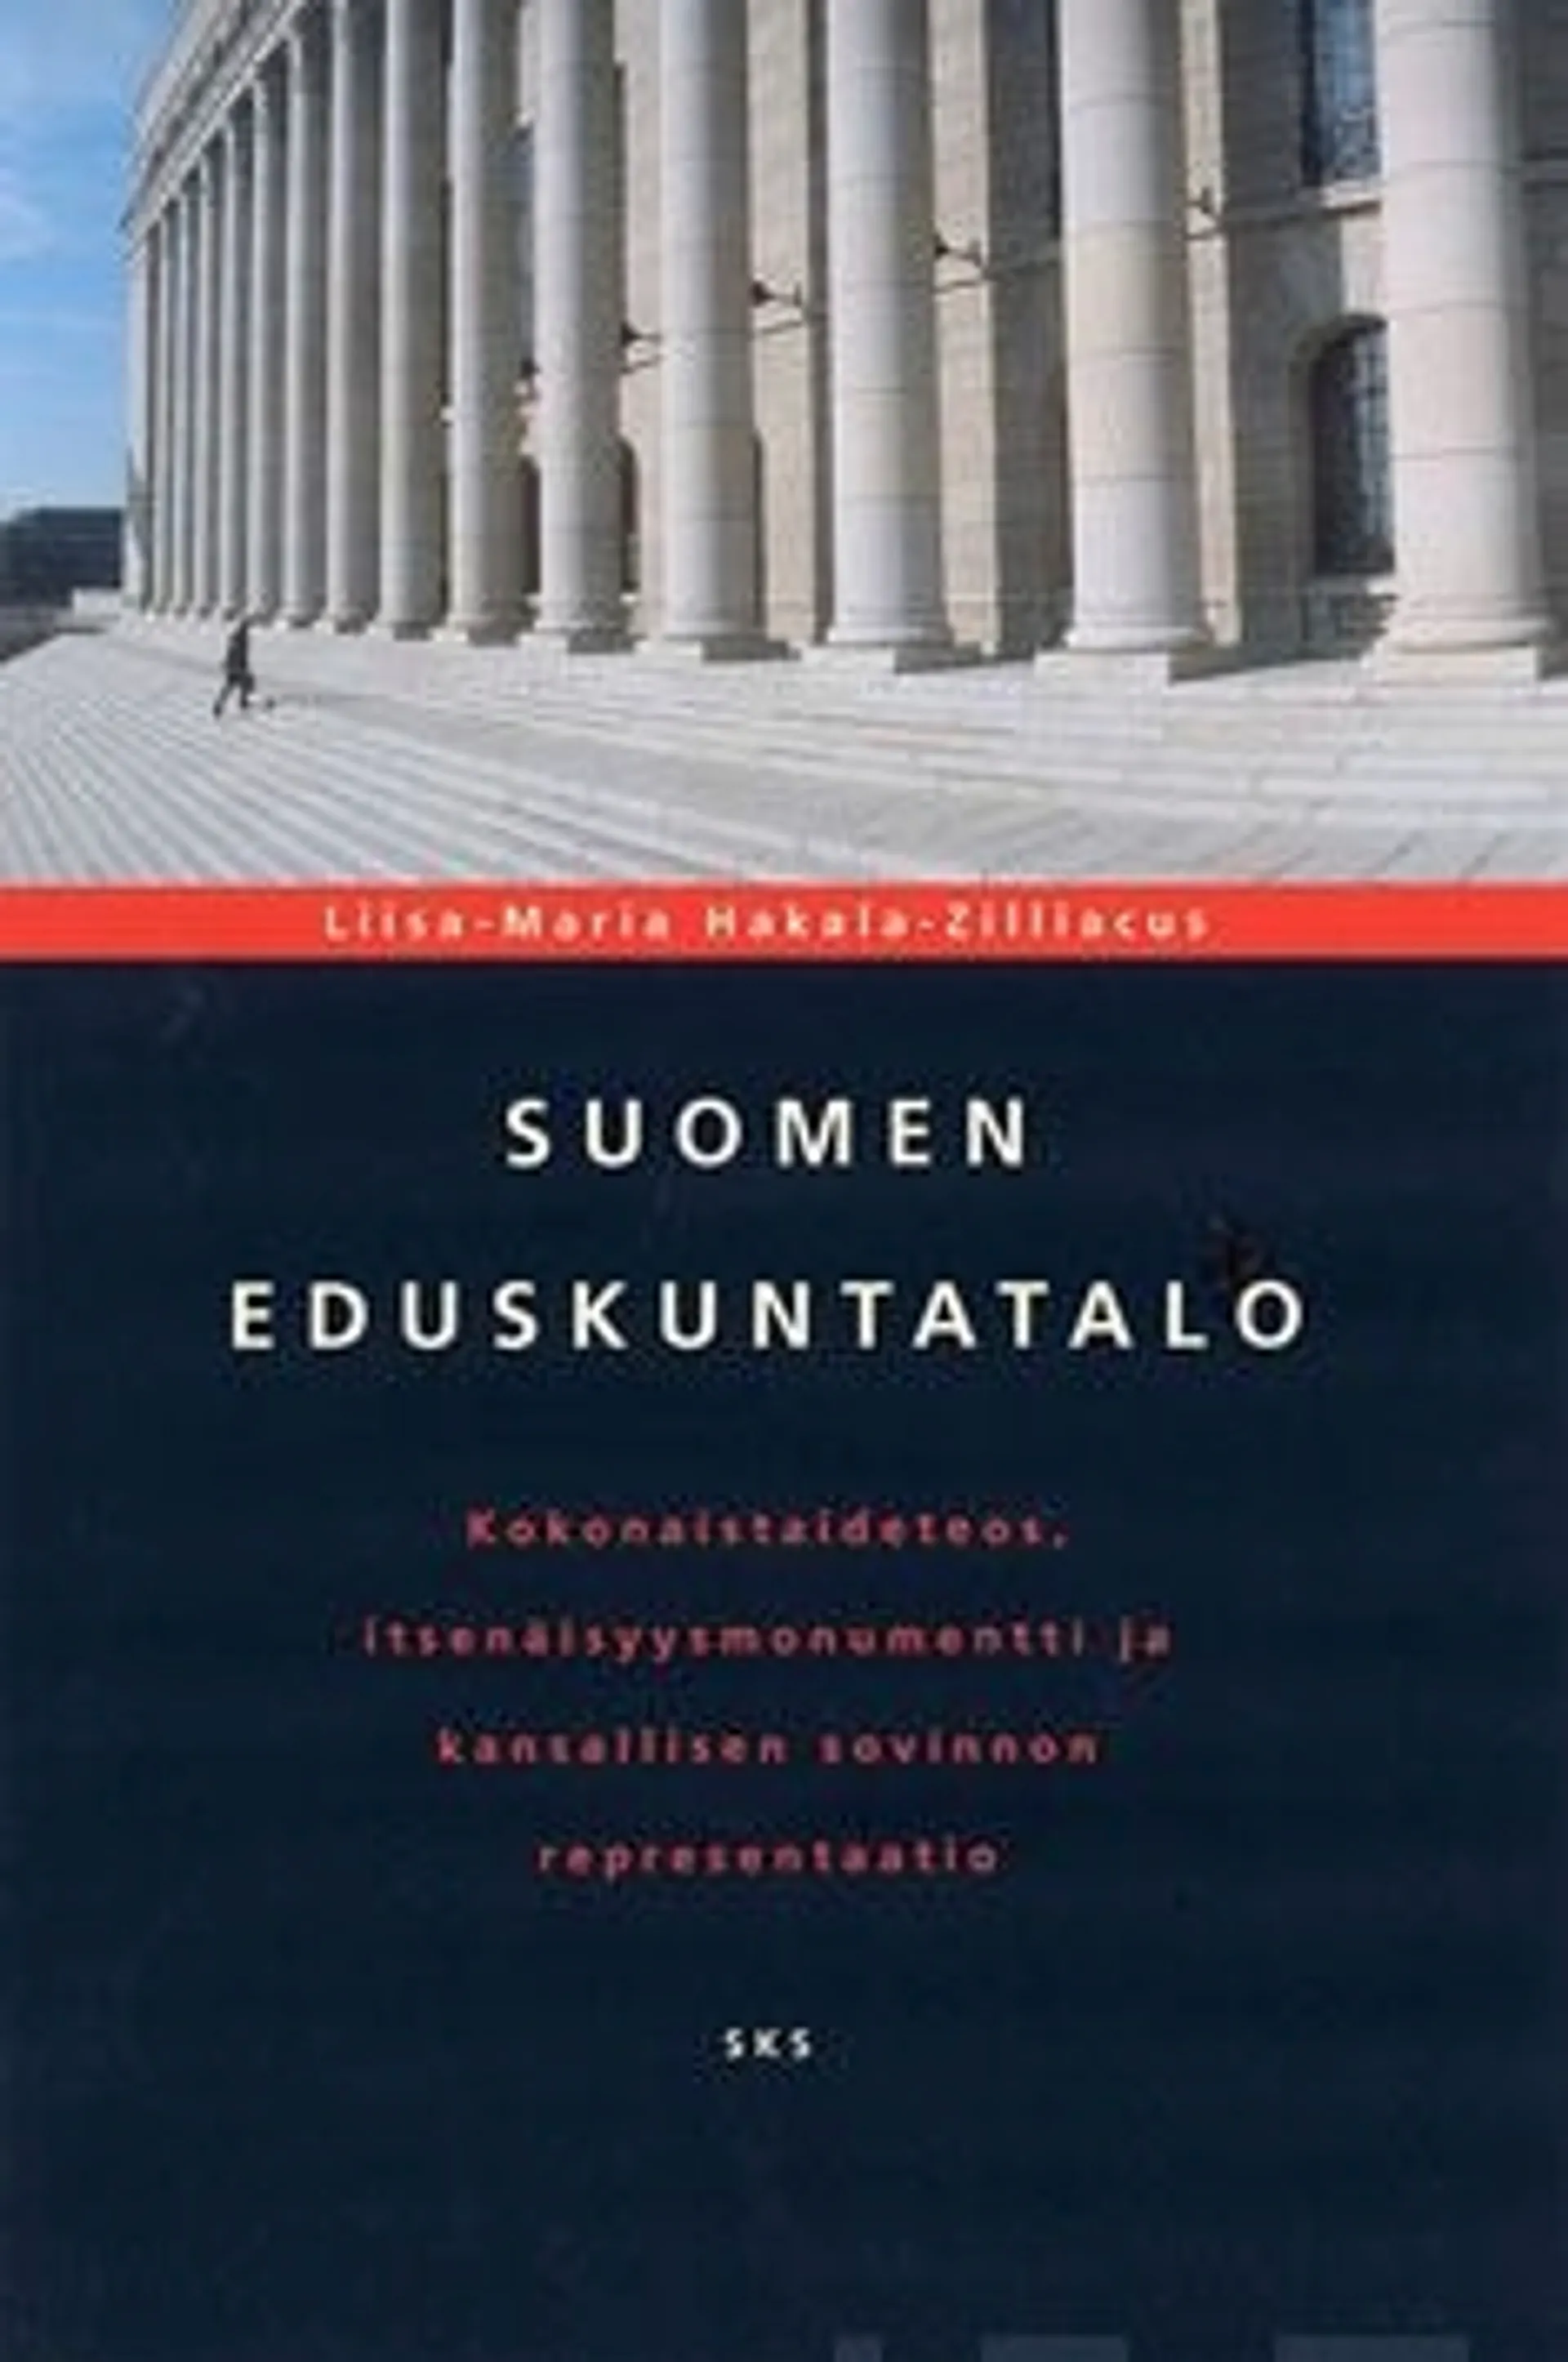 Hakala-Zilliacus, Suomen eduskuntatalo